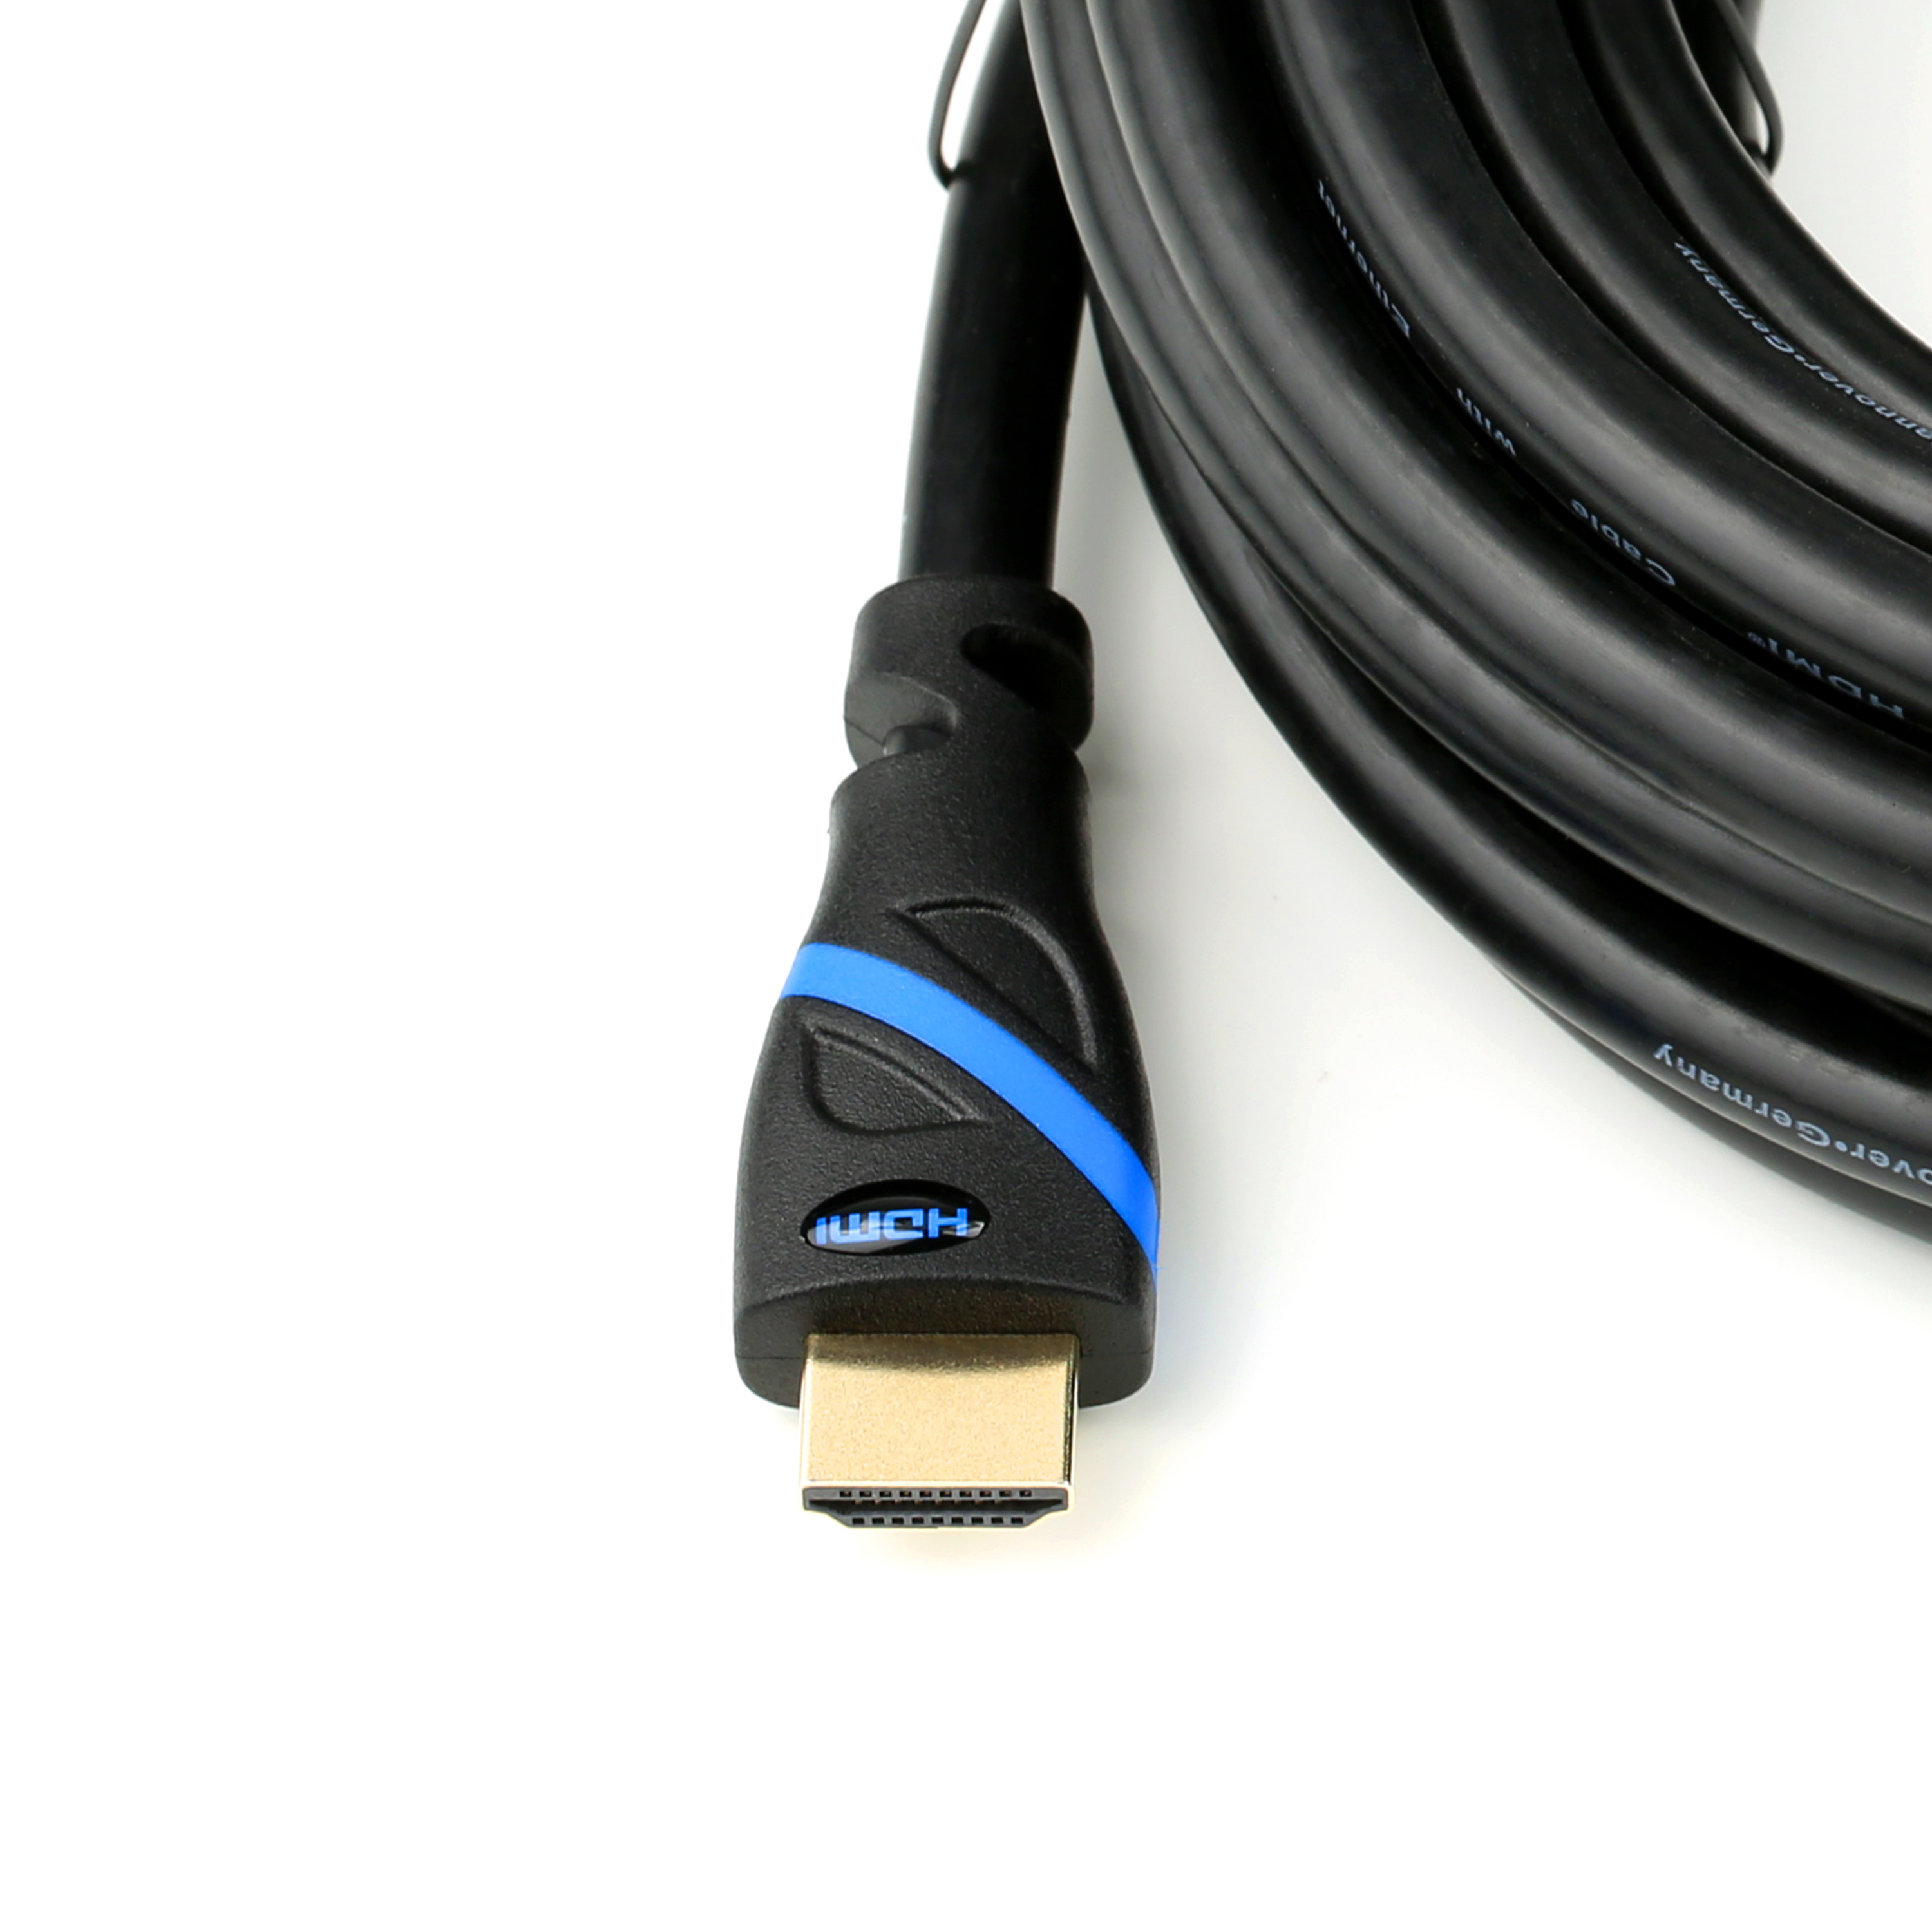 CSL HDMI 2.0 schwarz/blau HDMI Kabel, 0,5m Kabel